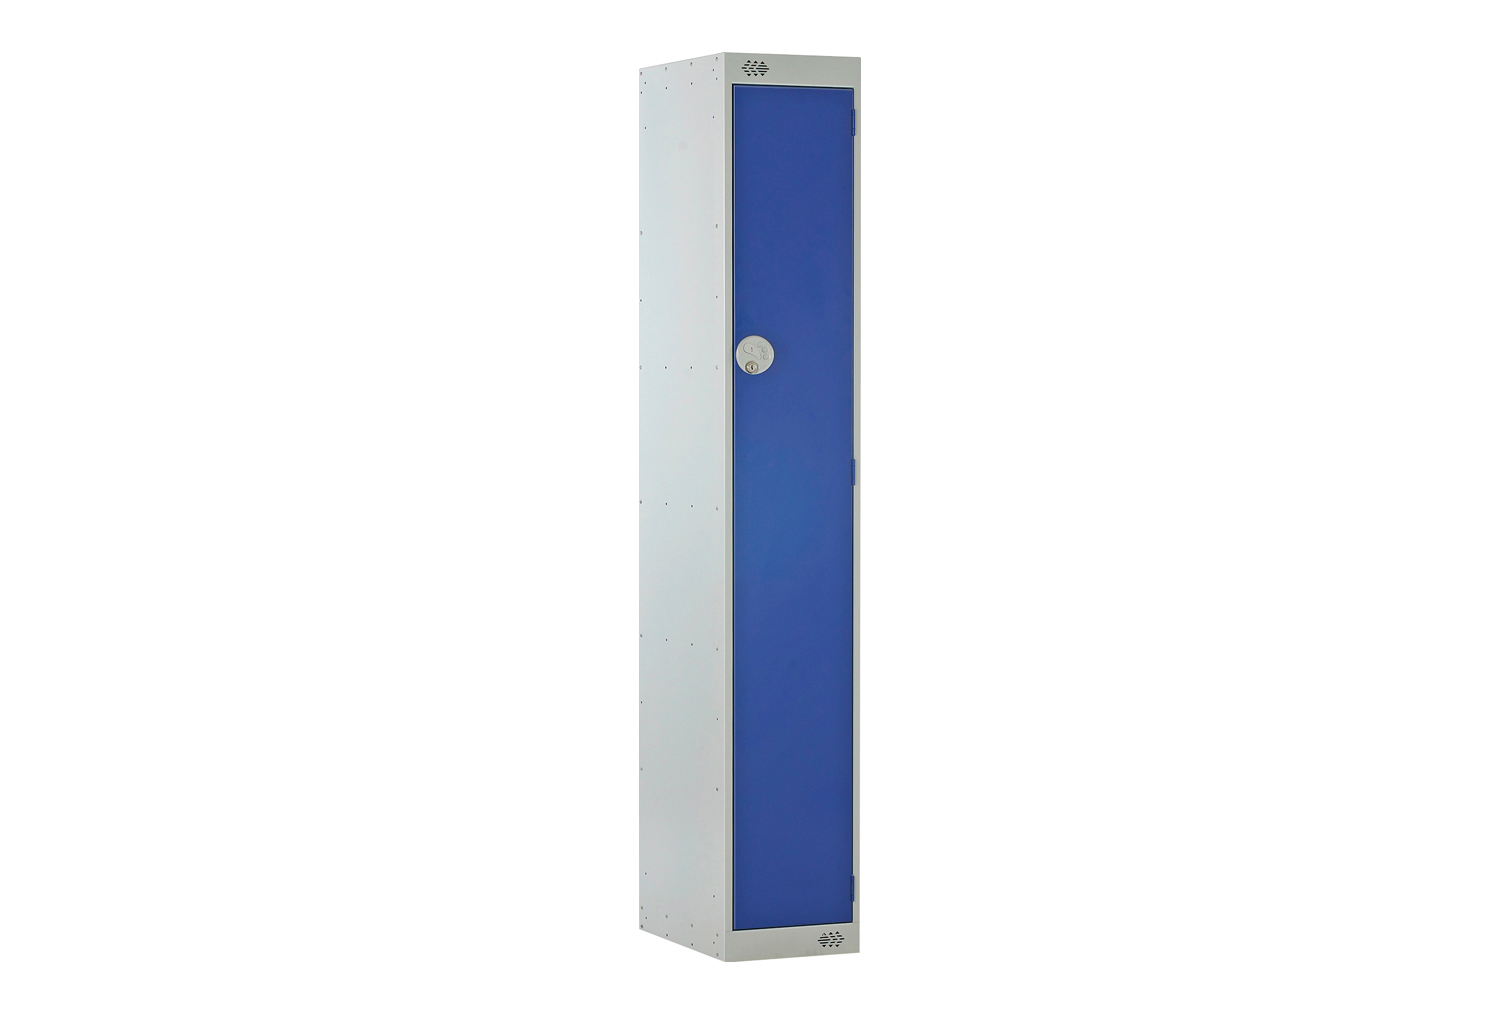 Deluxe 1 Door Locker, 30wx30dx180h (cm), Hasp Lock, Blue